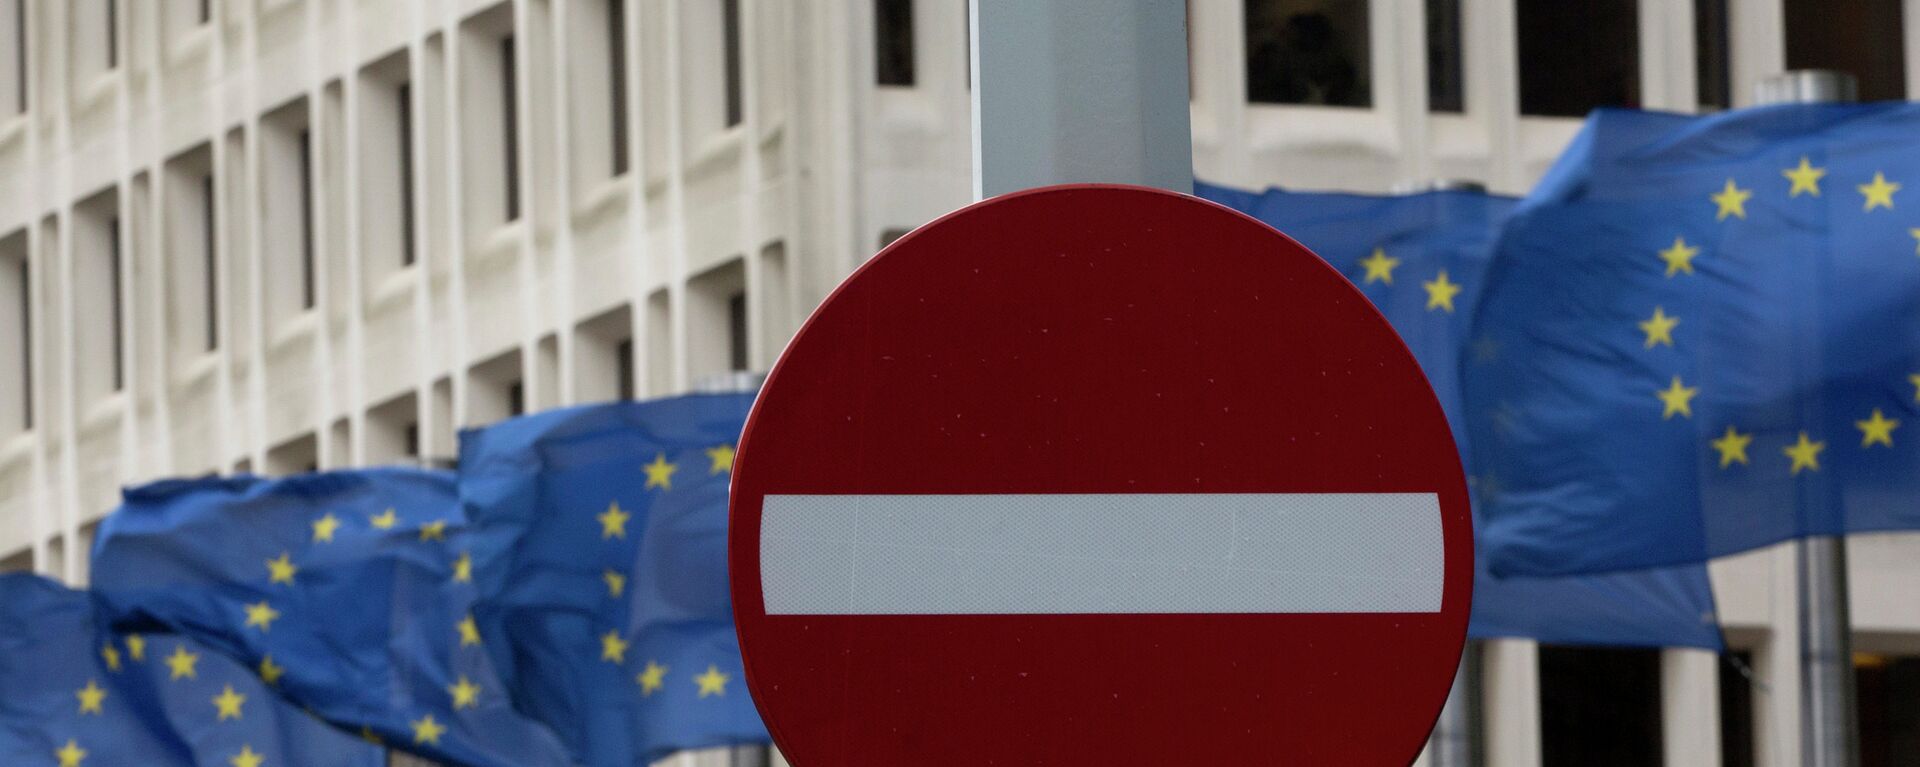 Bandera de la UE y señal de tráfico 'no hay entrada' - Sputnik Mundo, 1920, 15.03.2021